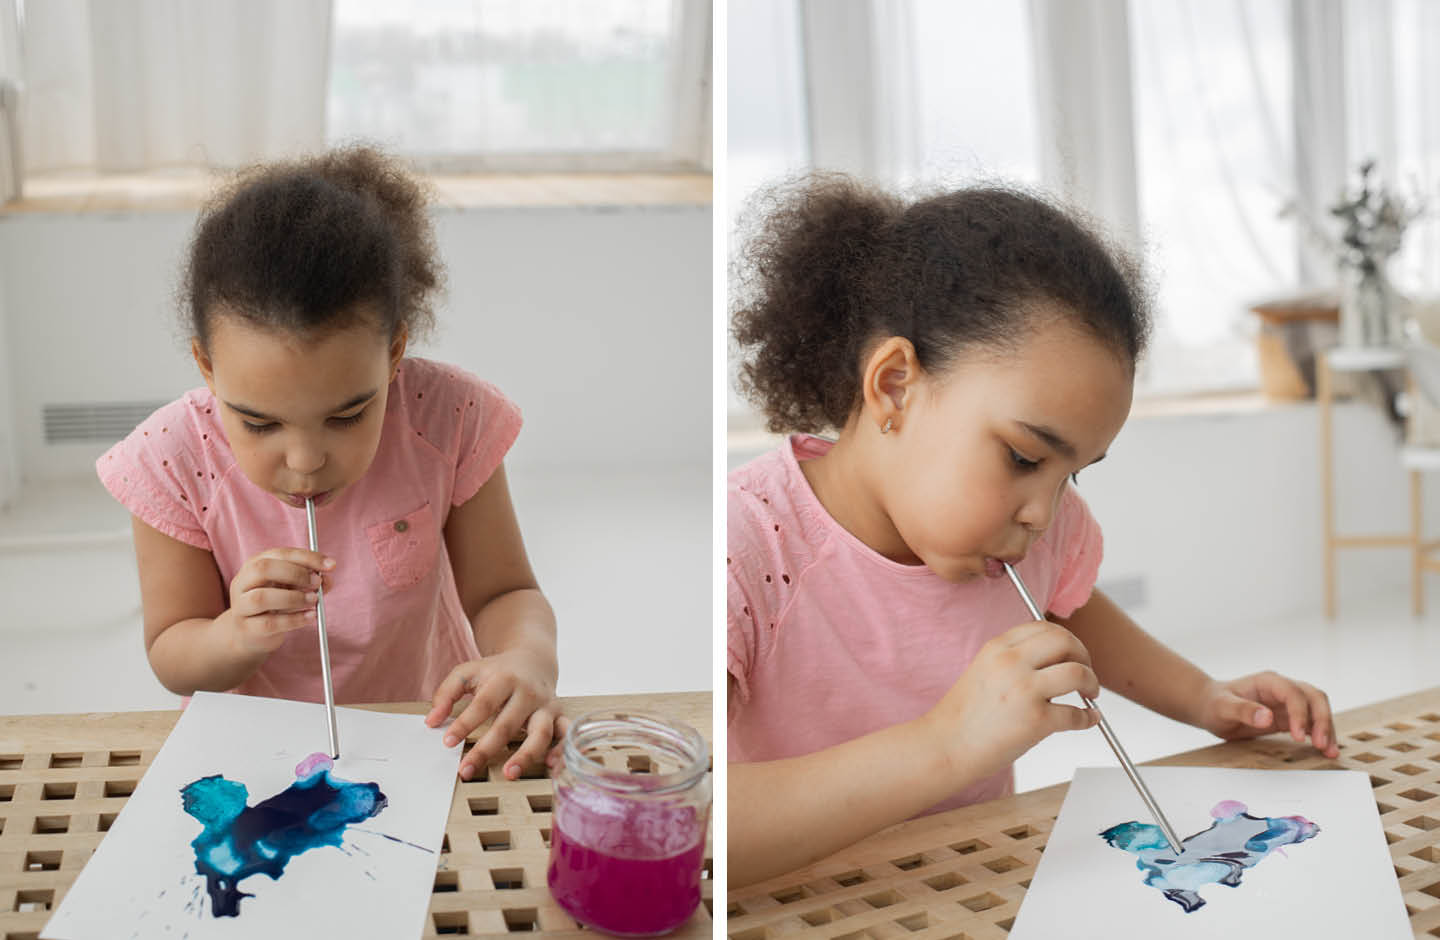 Kreative Idee für den Kindergeburtstag für Meerjungfrauen: Mit Wasserfarben und Trinkhalm Meerestiere pusten